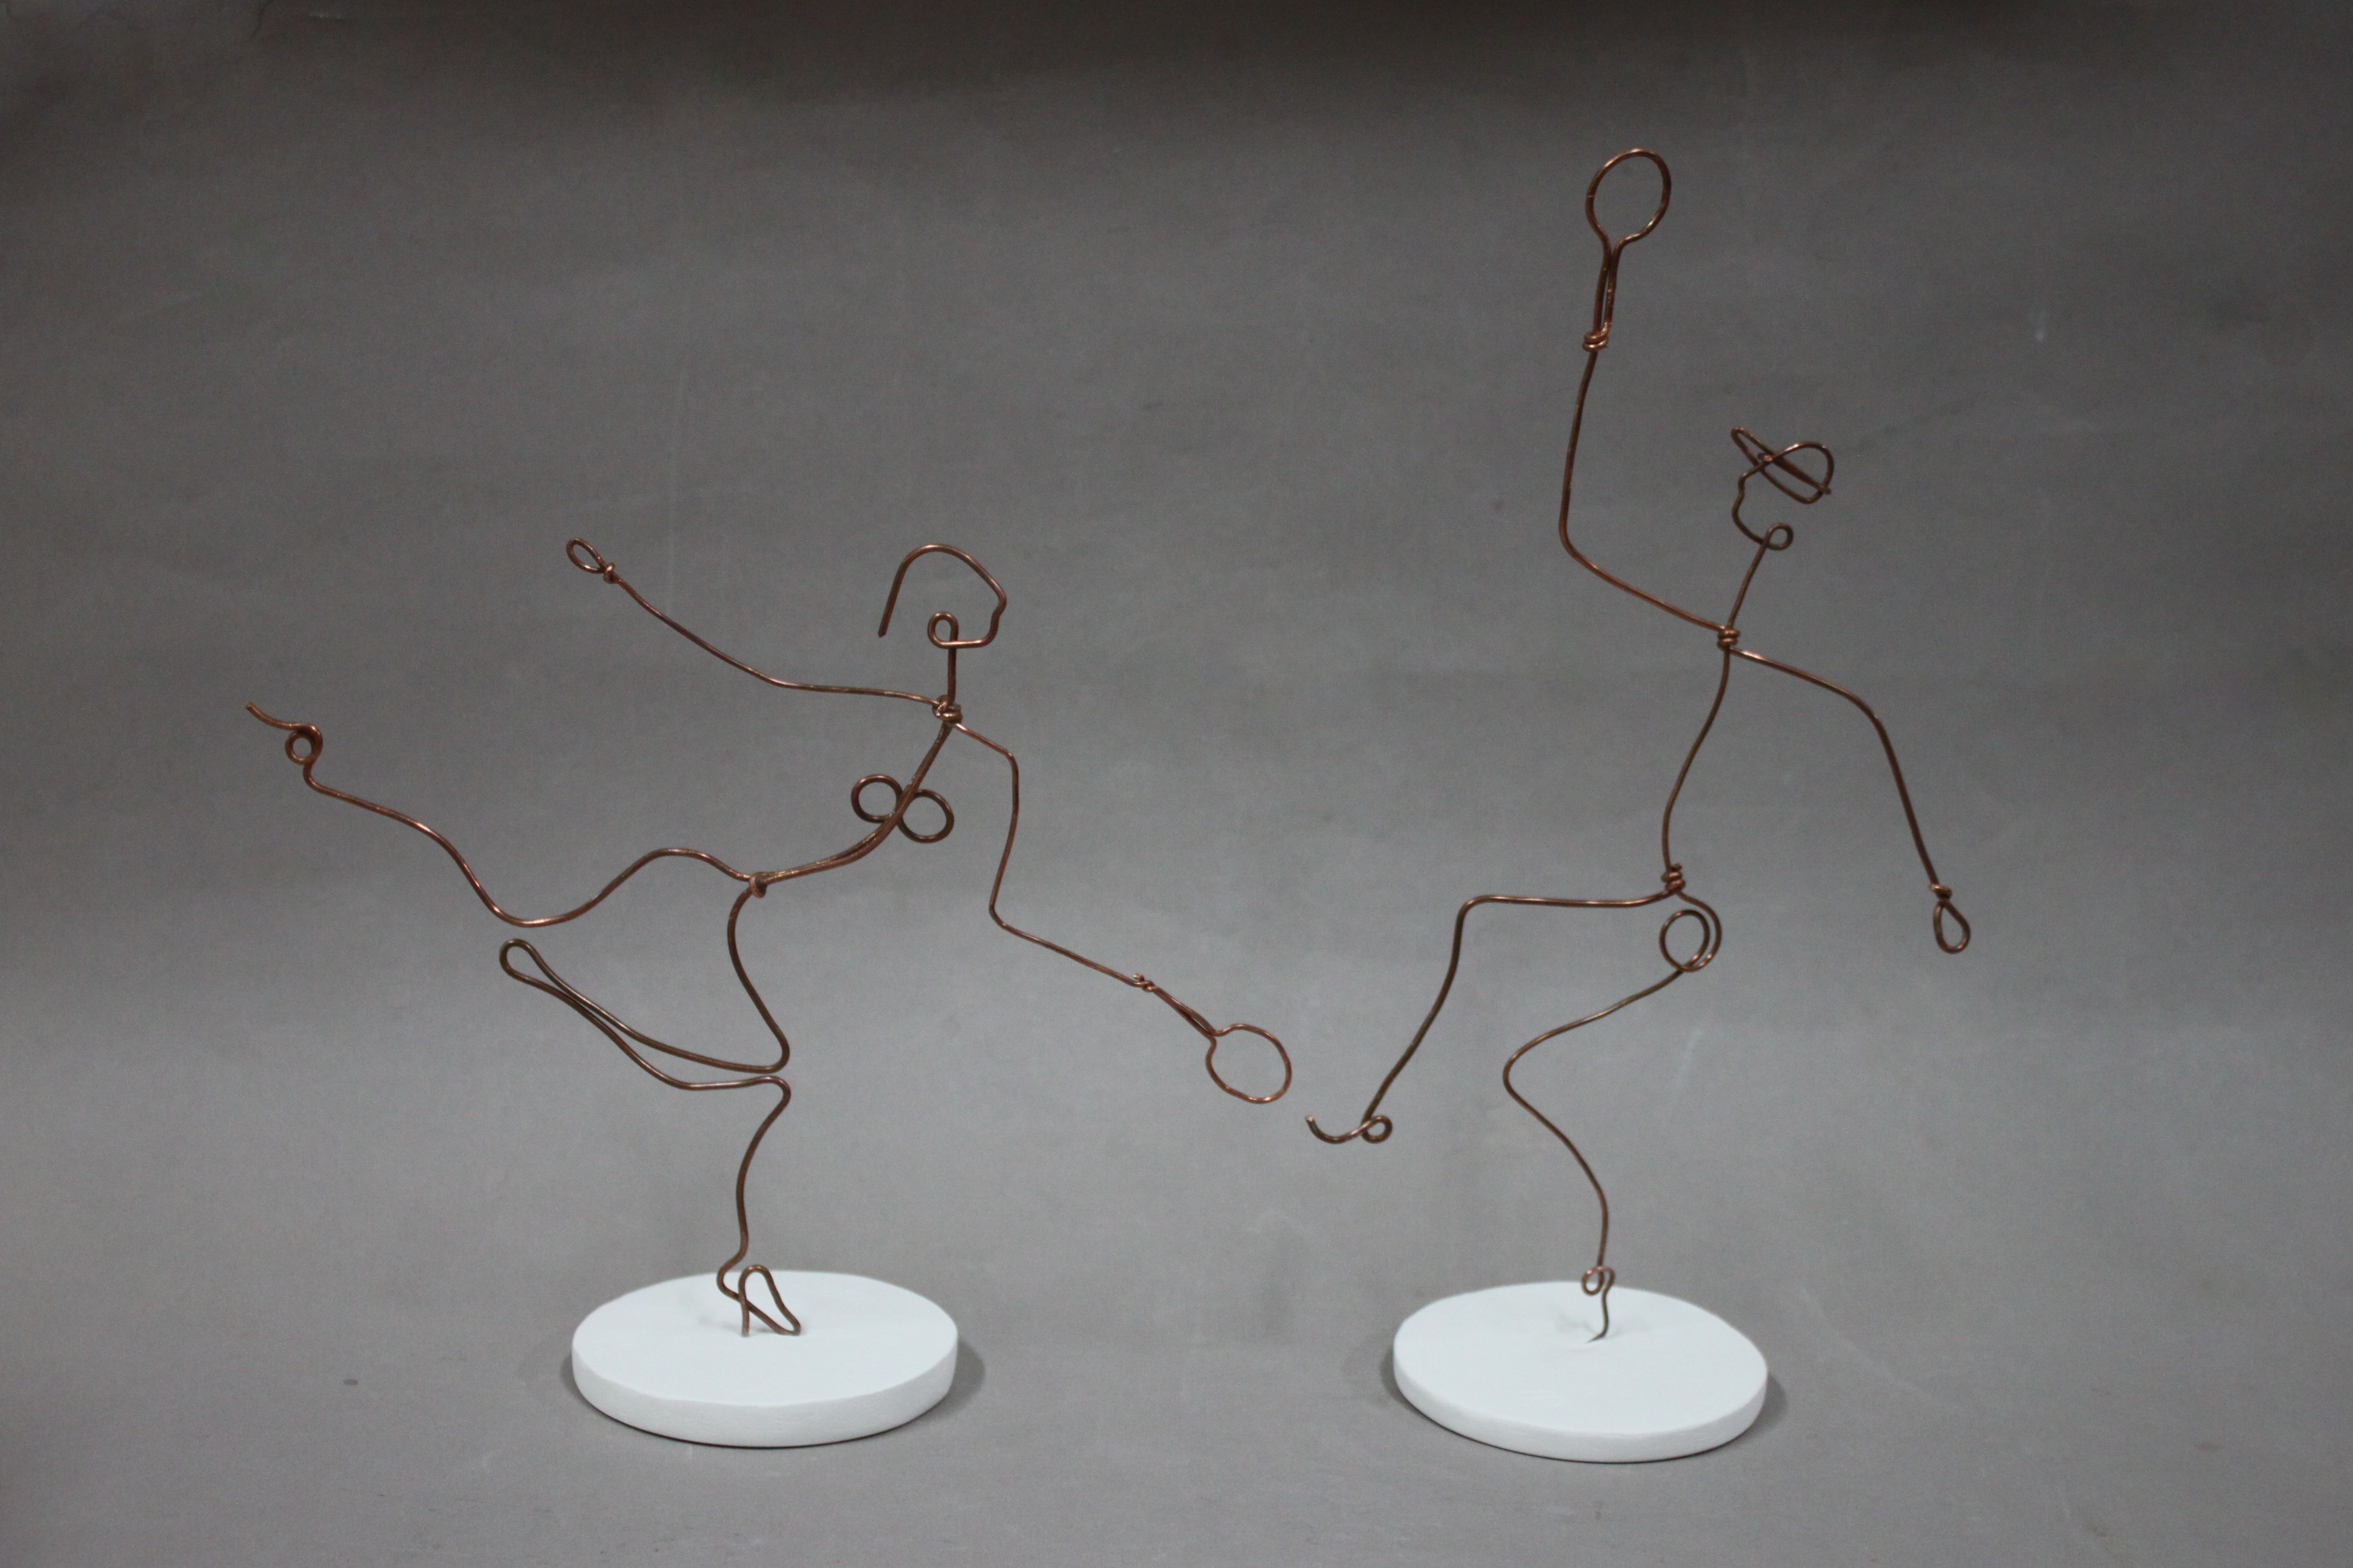 Reproduction et pastiche joueurs de tennis en sculpture en fil de fer de Helen Wills d'Alexandre Calder